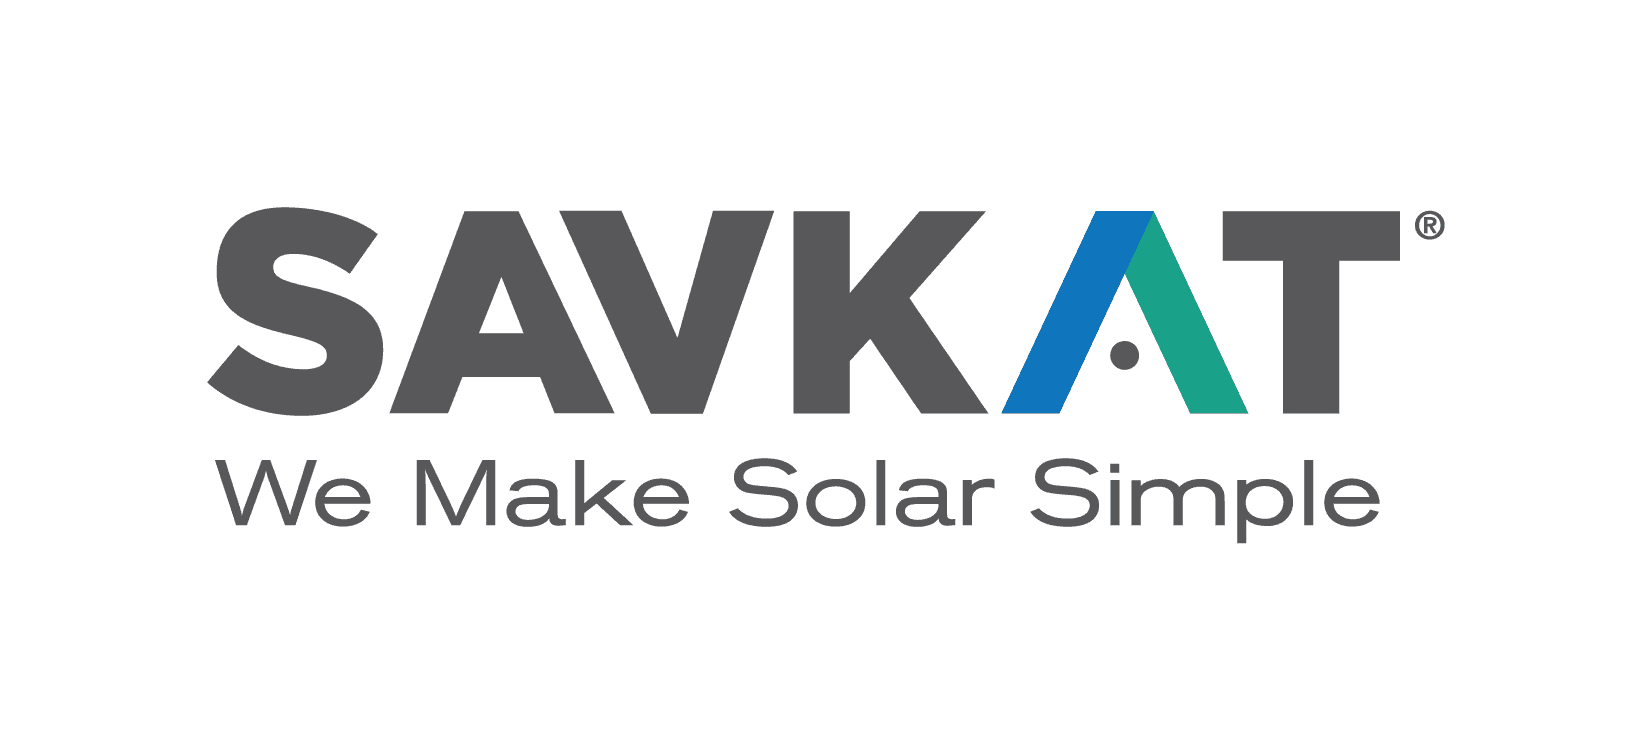 SAVKAT Solar Logo